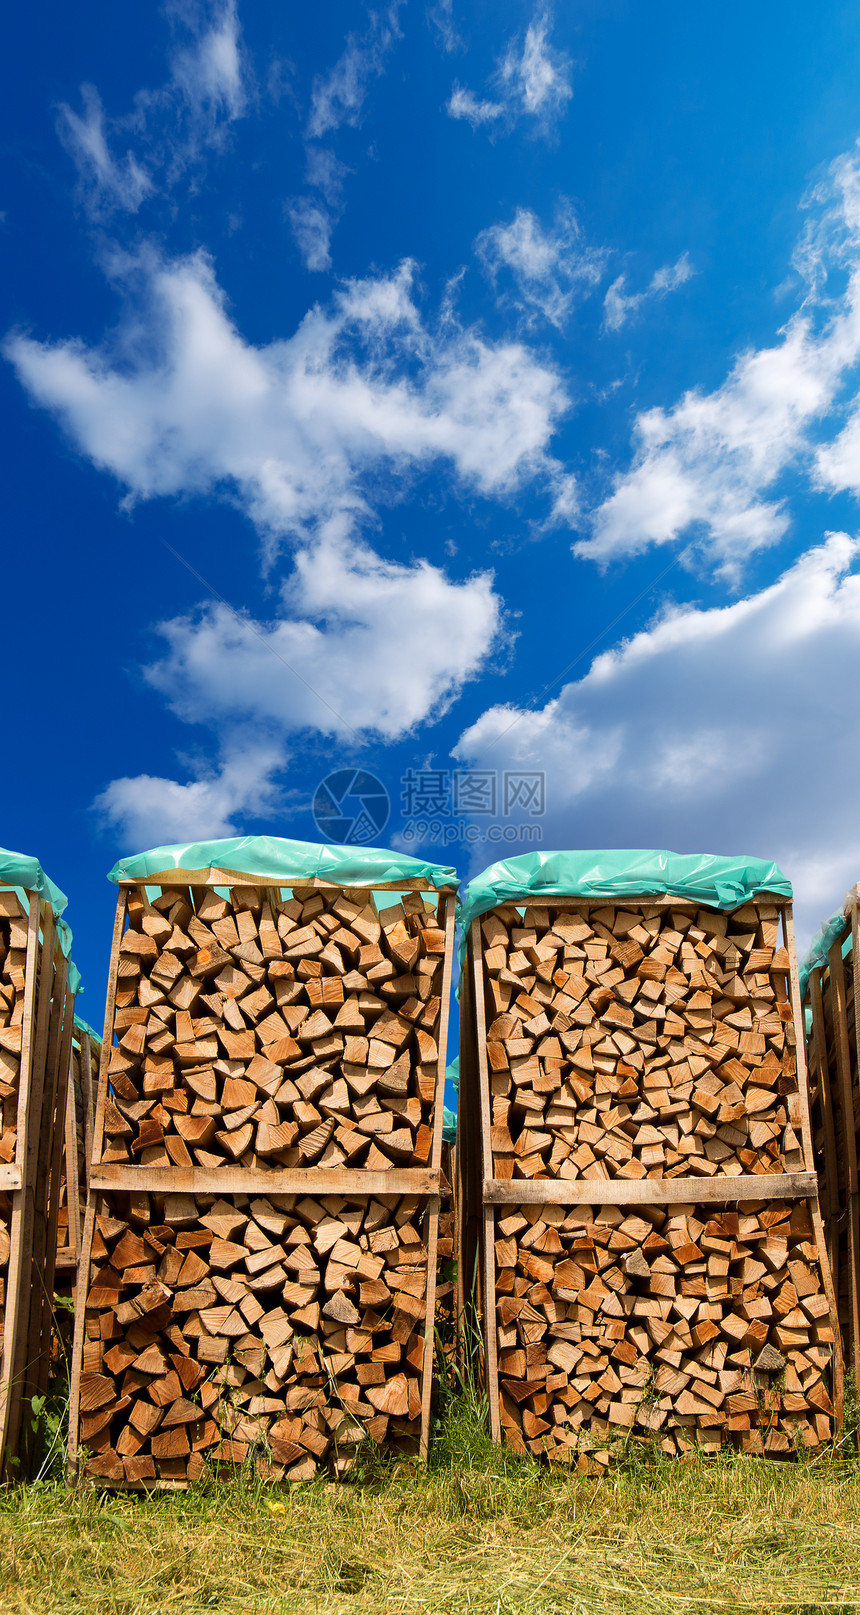 蓝天上的壁木坑松树柴堆材料环境能量林业森林燃料木材壁炉图片